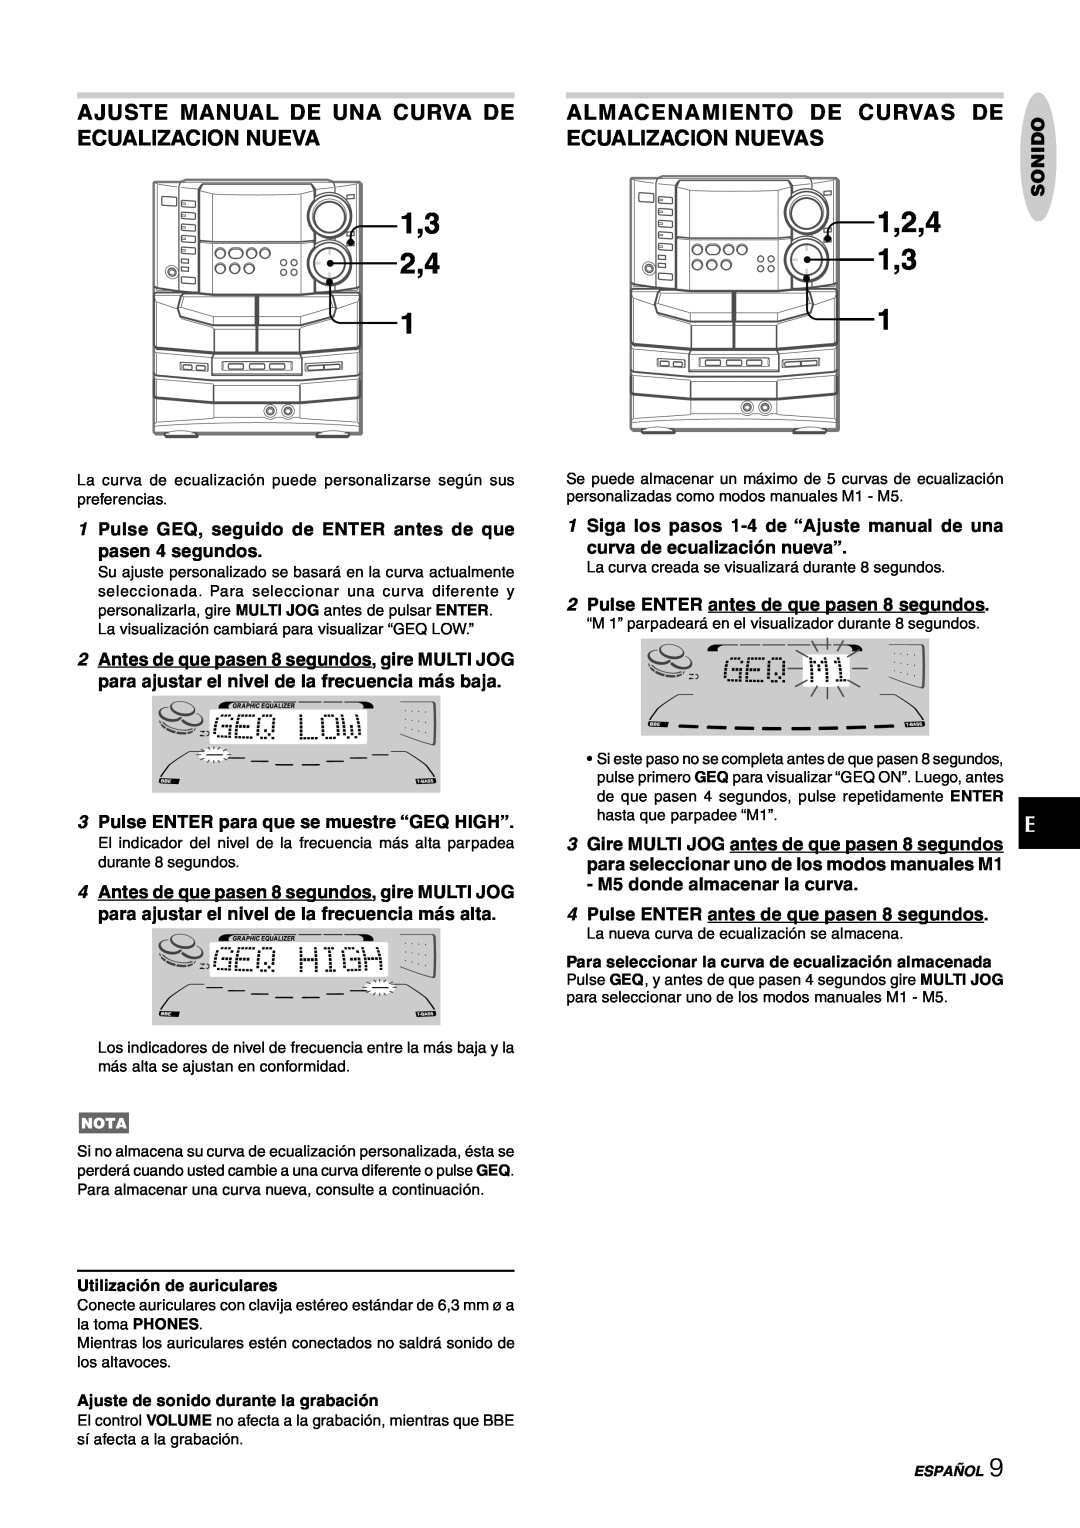 Sony NSX-AJ80 Ajuste Manual De Una Curva De Ecualizacion Nueva, Almacenamiento De Curvas De, Ecualizacion Nuevas, Sonido 